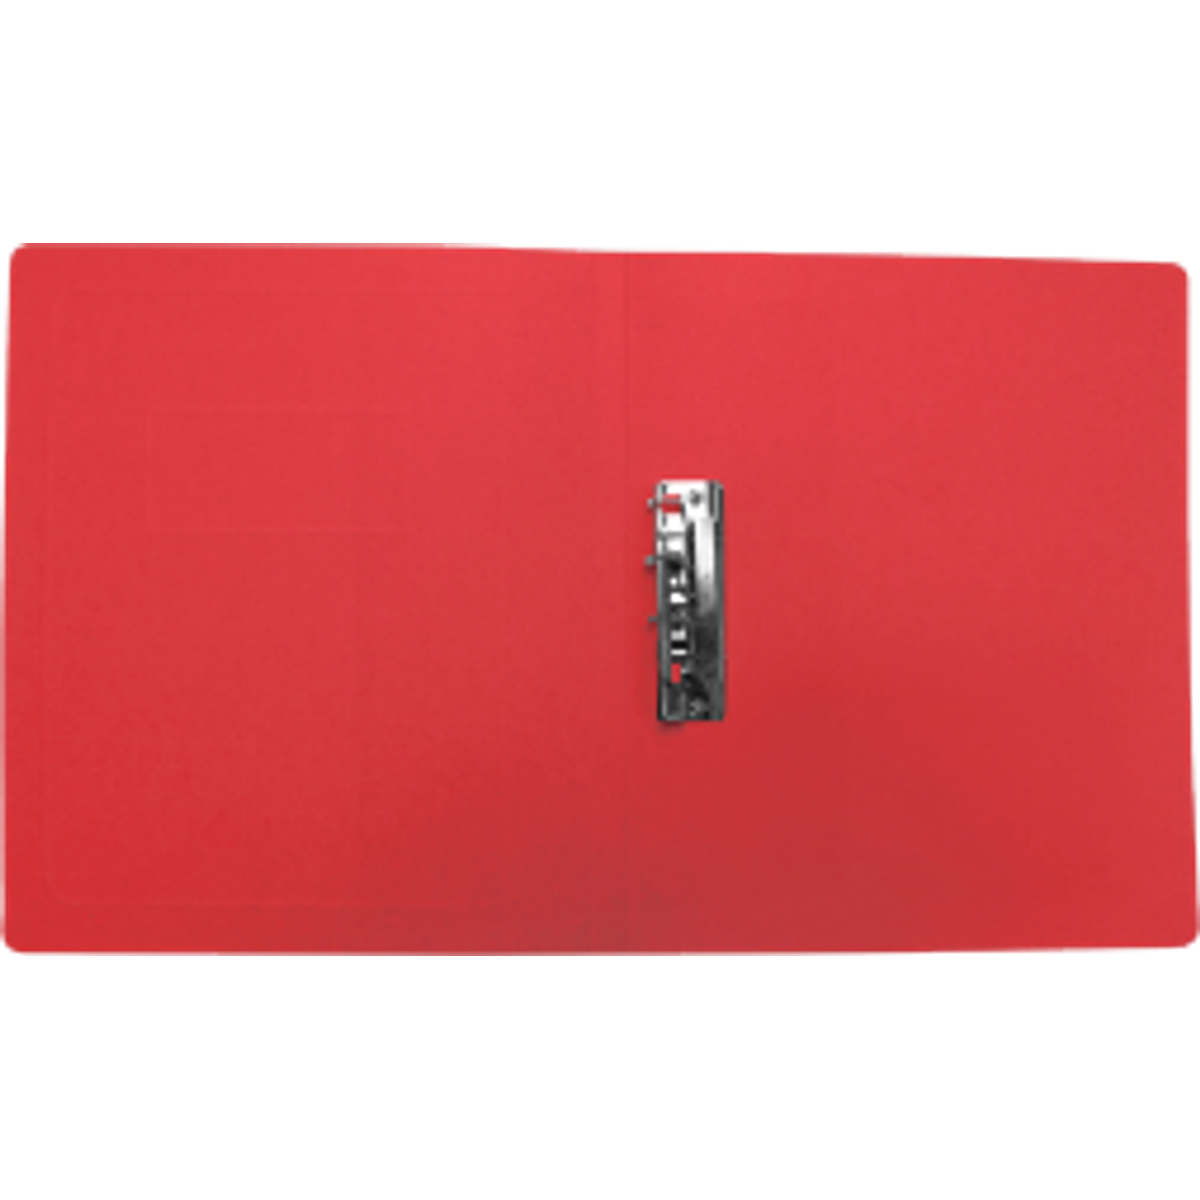 Carpeta pressboard color rojo tamaño carta, con palanca